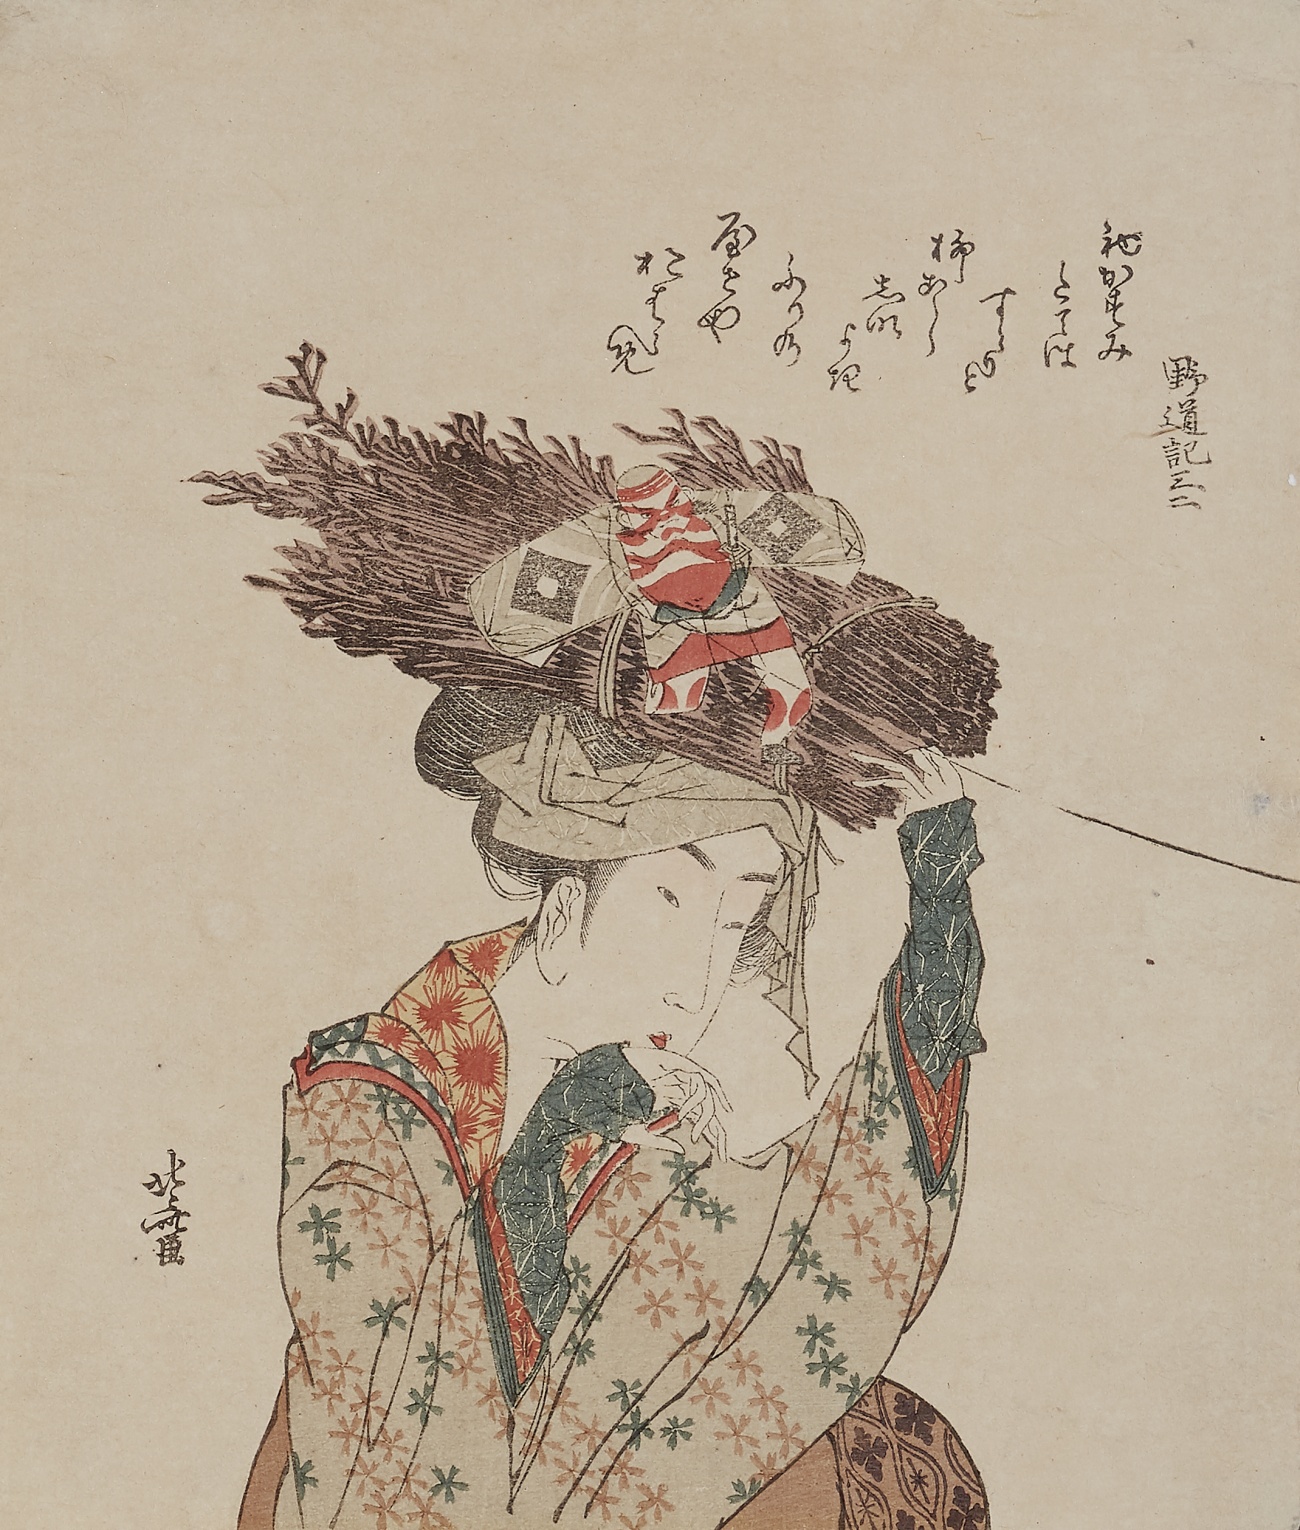 Katsushika Hokusai
Totoya Hokkei - Totoya Hokkei (1780-1850) and Katsushika Hokusai (1760-1849)